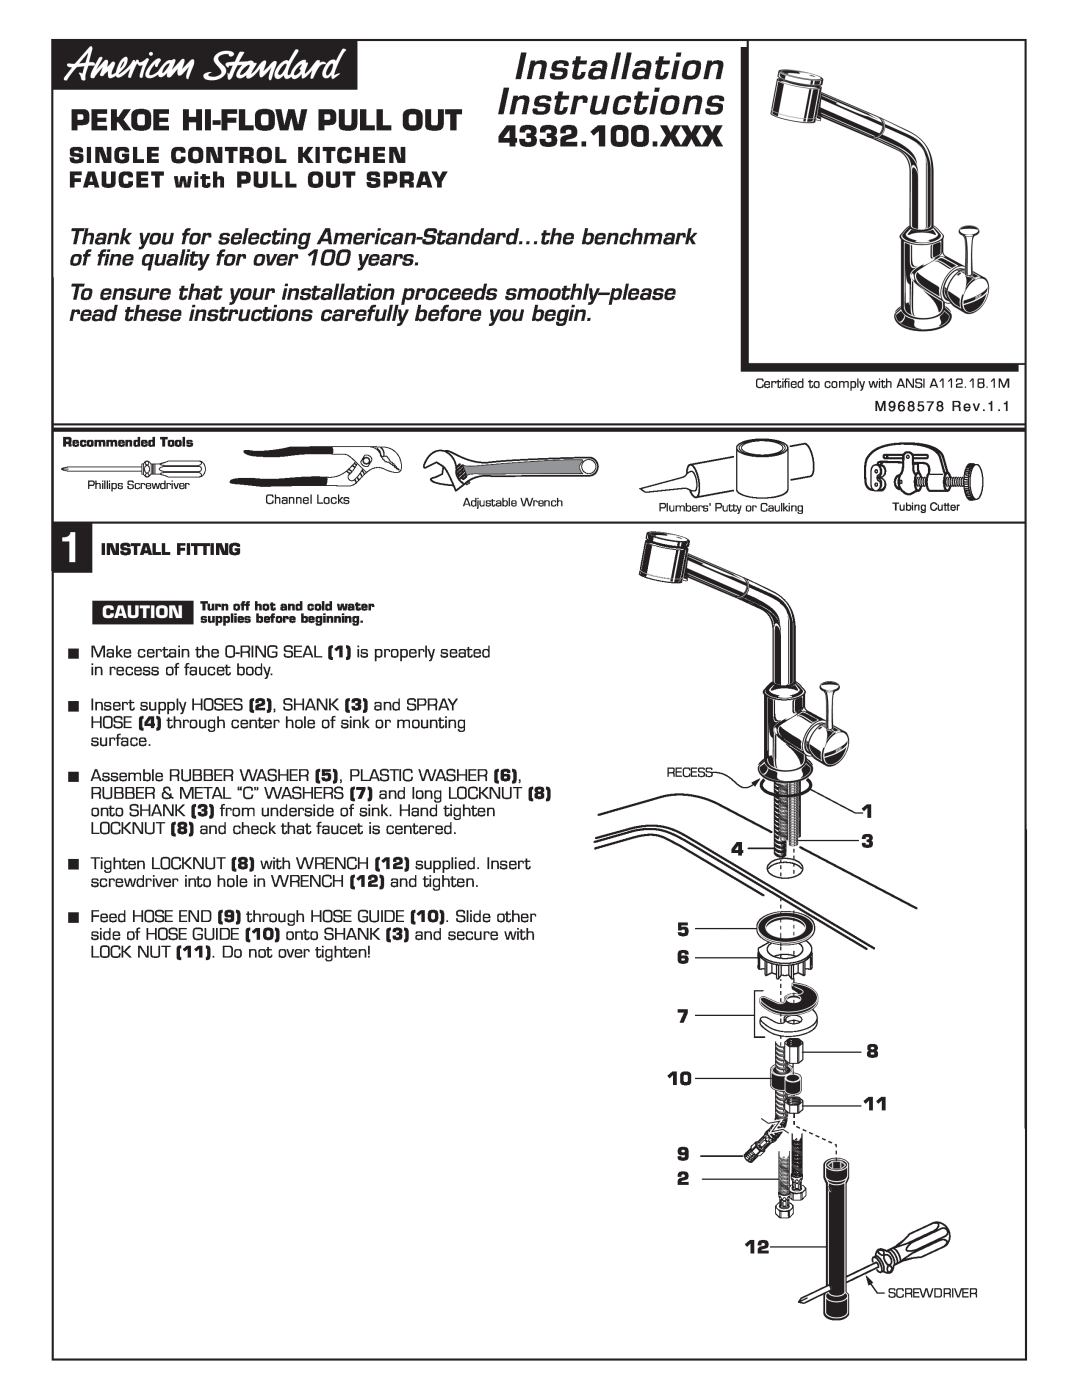 American Standard 4332.100.XXX installation instructions Pekoe Hi-Flowpull Out, Installation, Instructions 